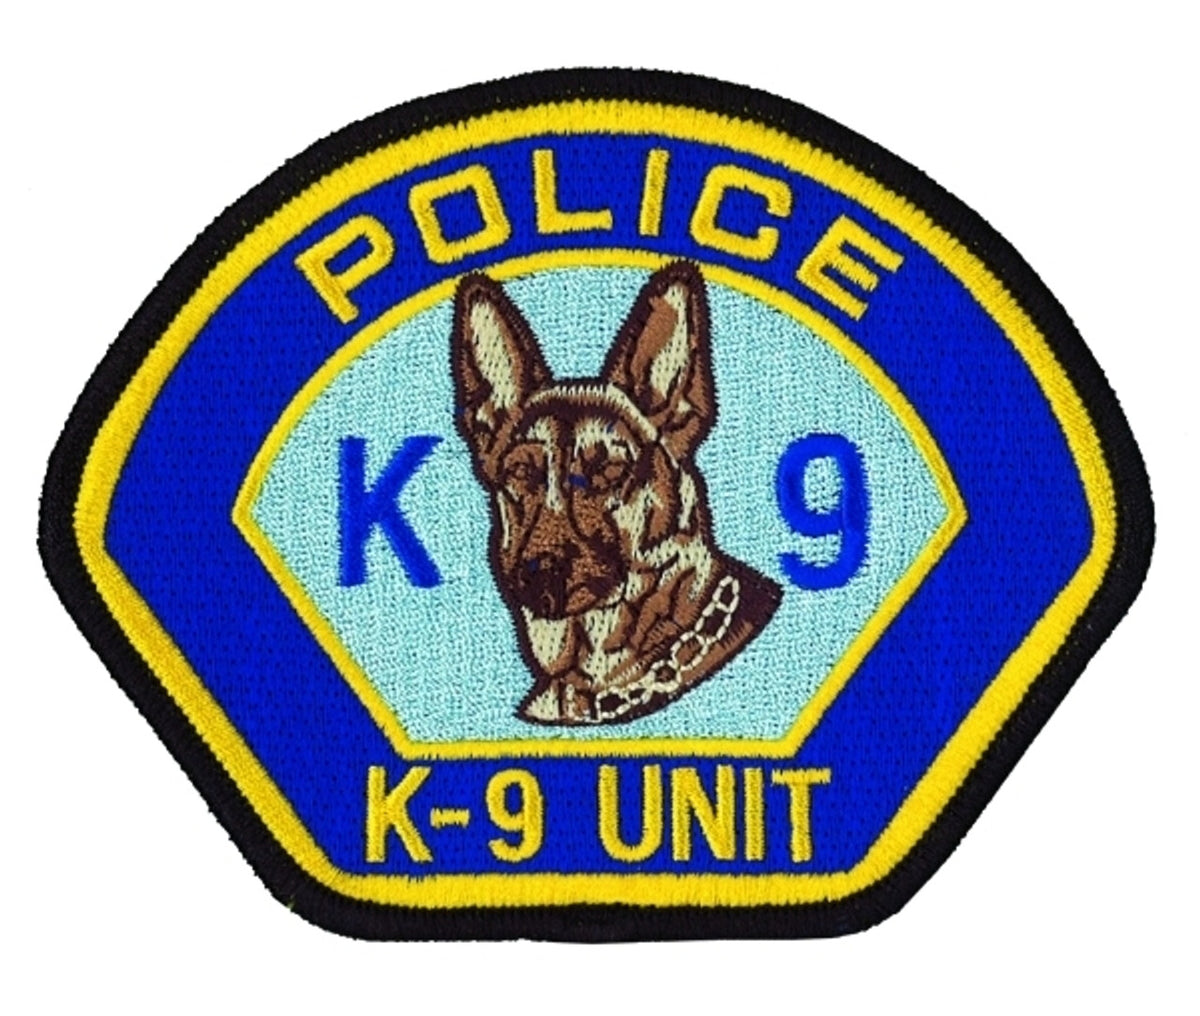 Police K-9 Unit Patch - 4 1/2 inch